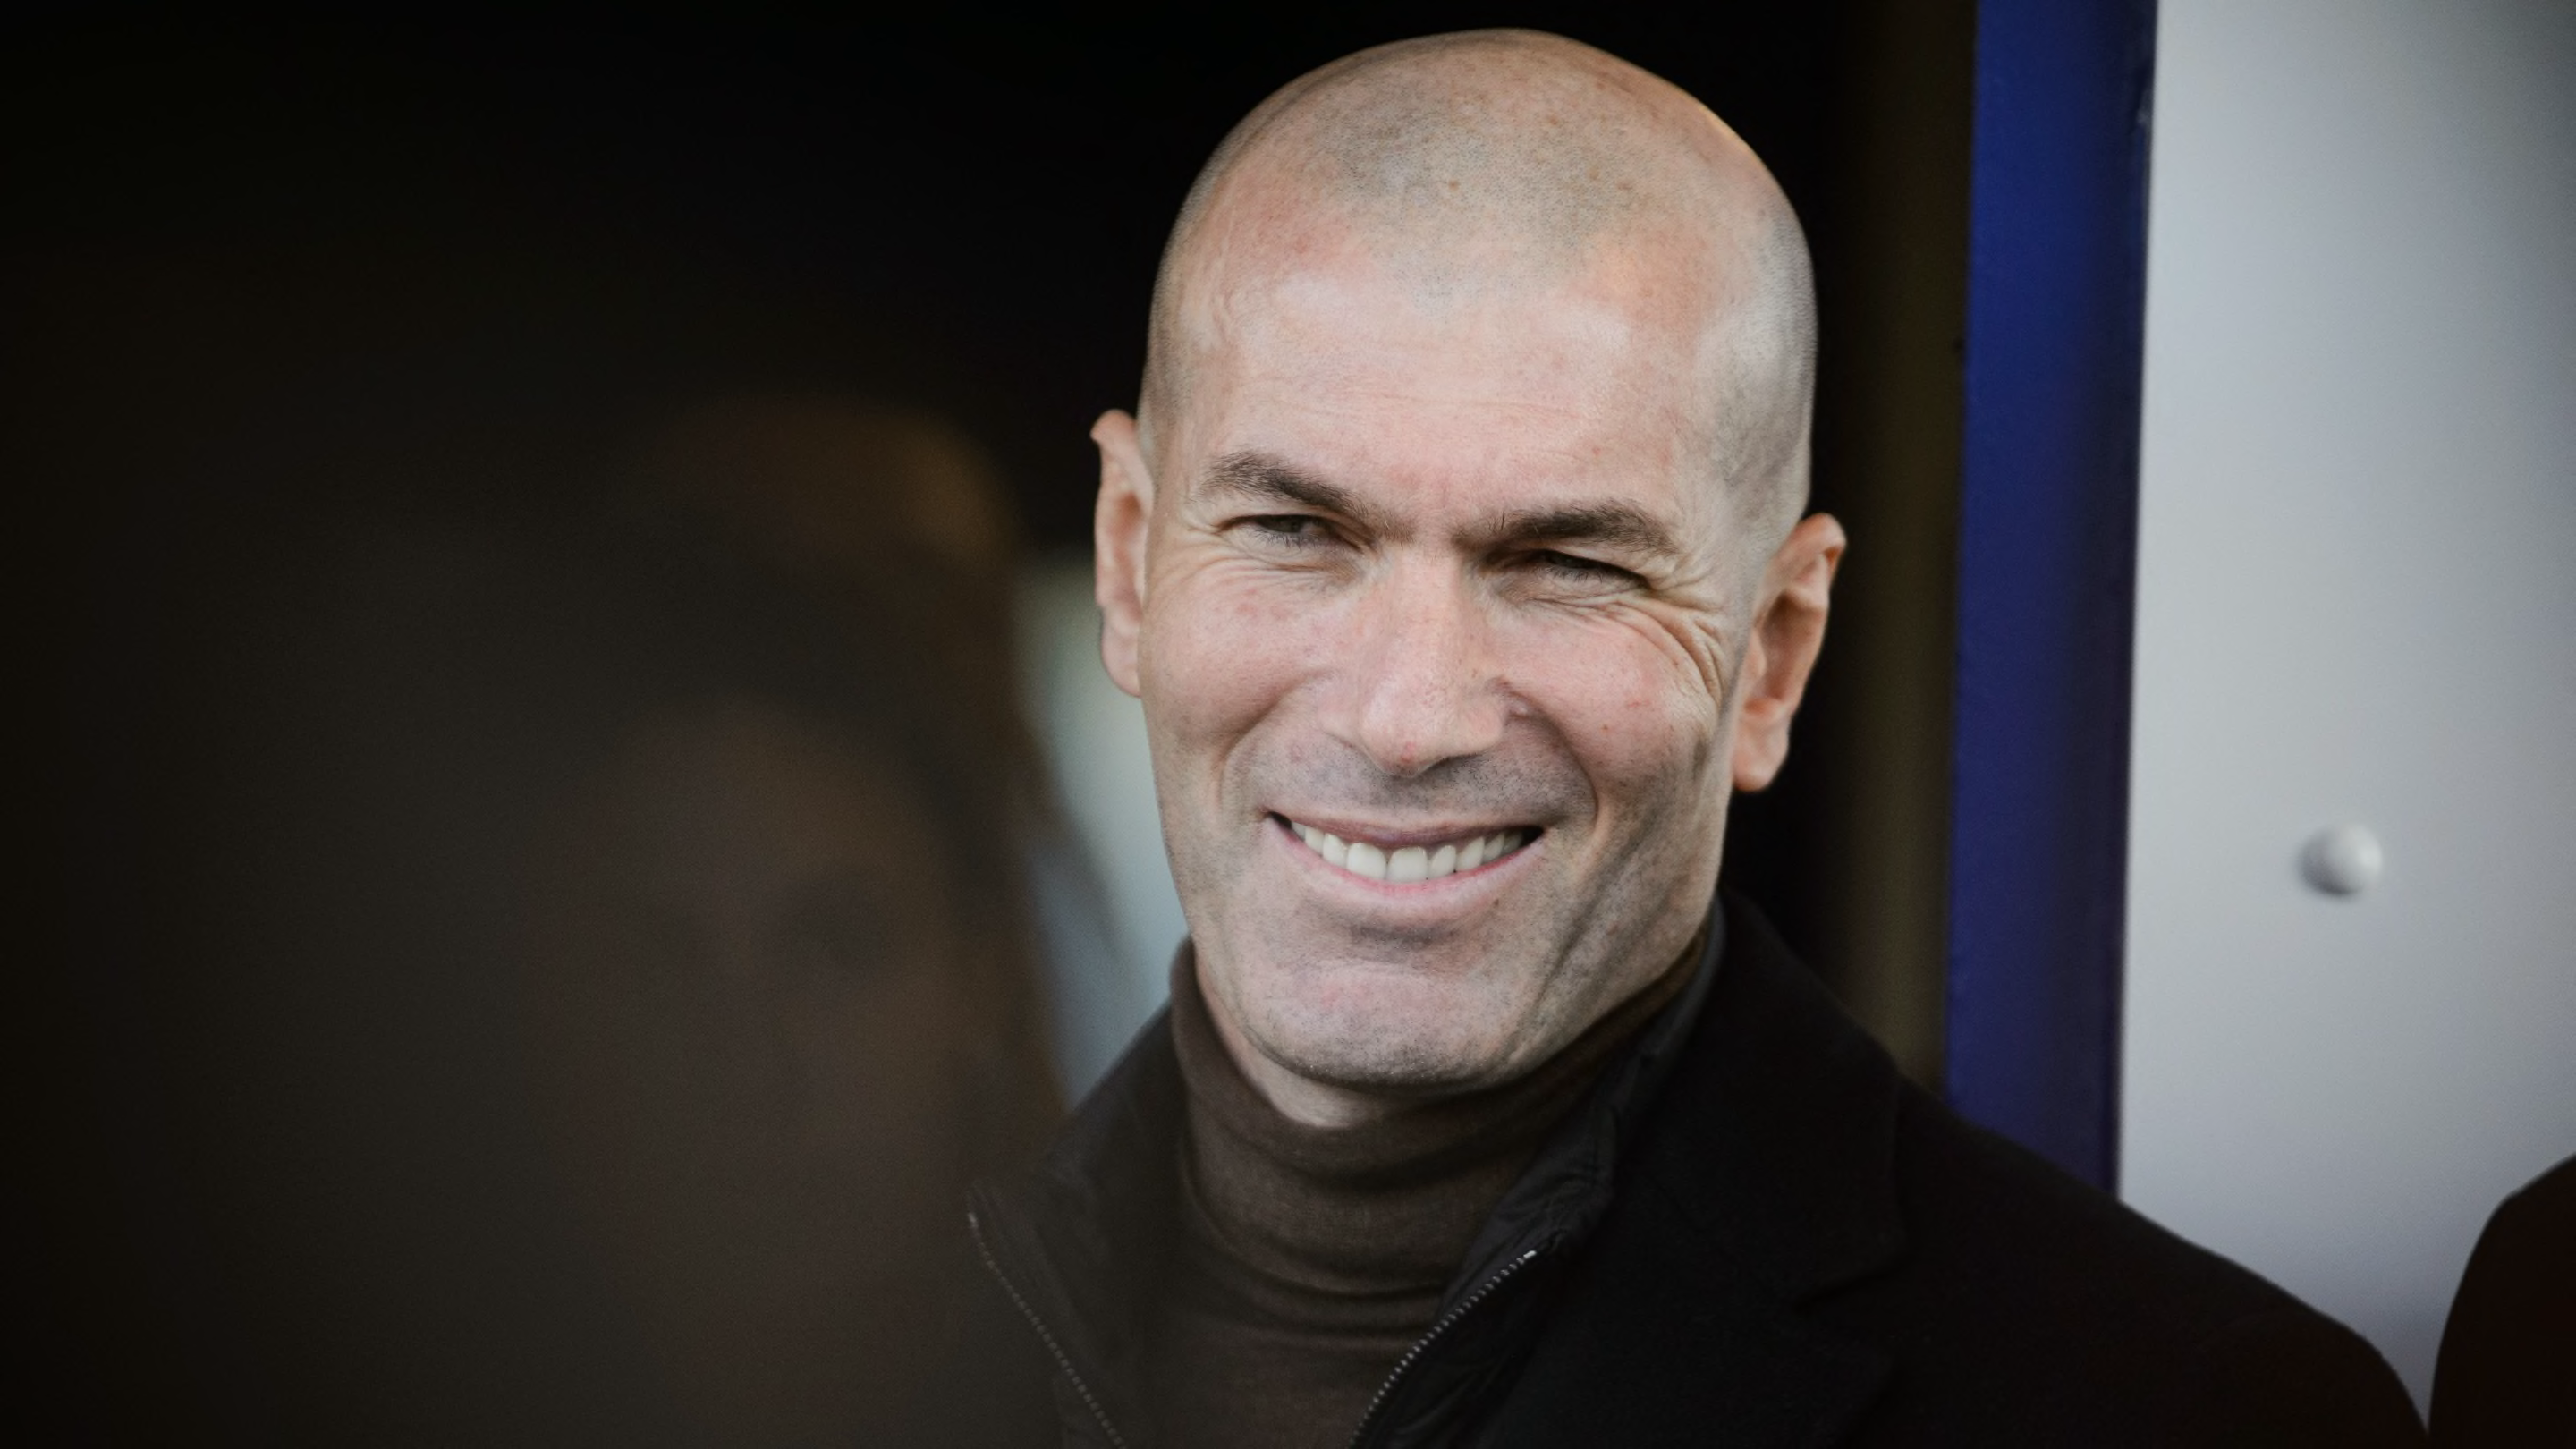 Bayern Munich 'contact' Zinedine Zidane over manager job